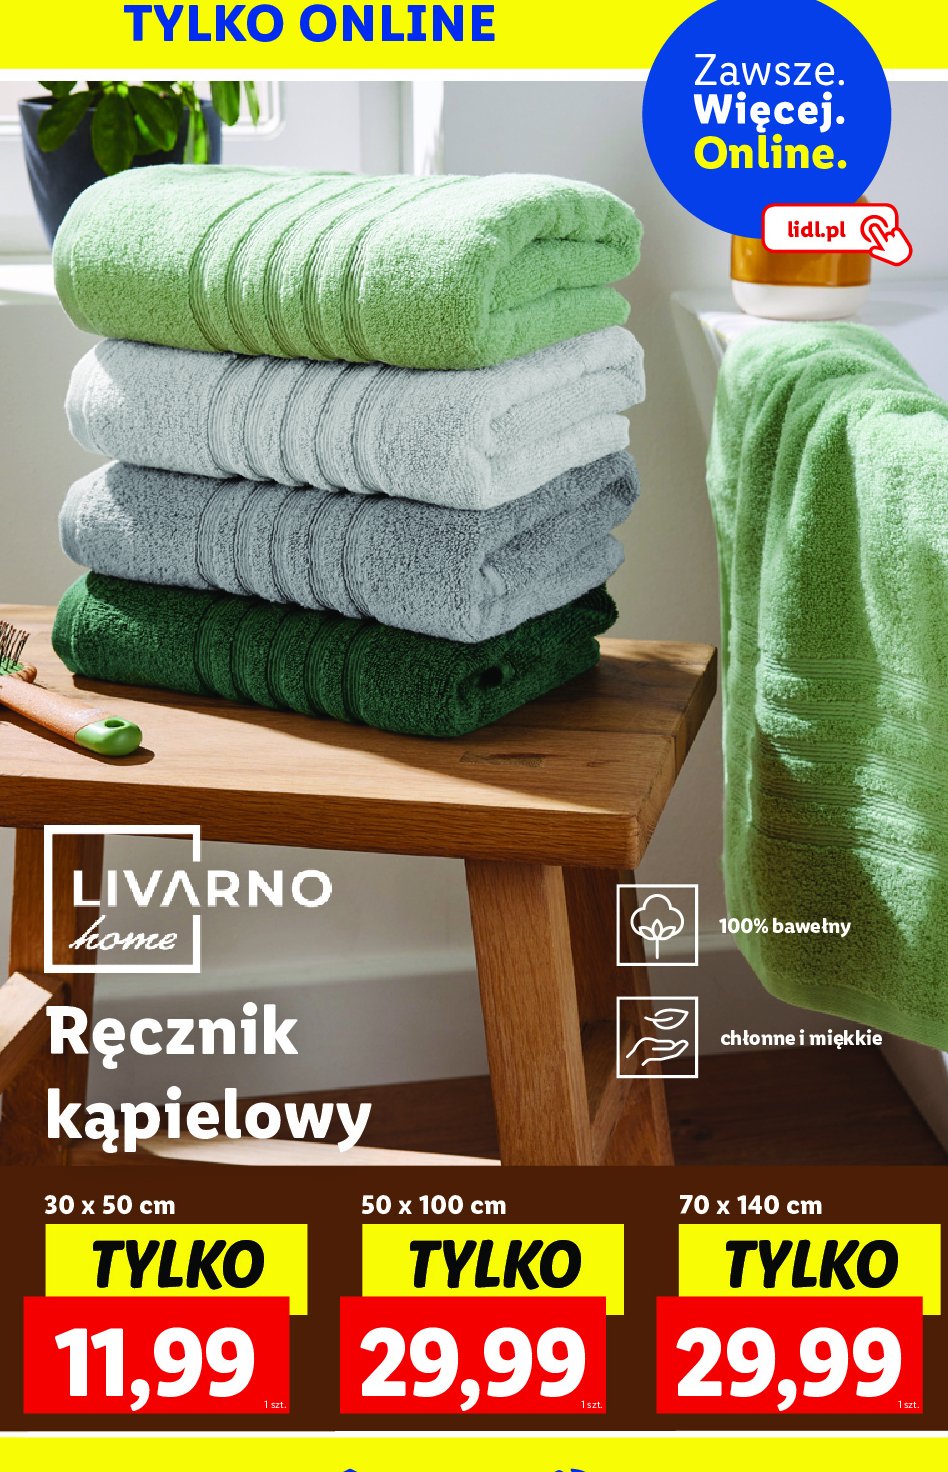 Ręcznik 70 x 140 cm LIVARNO HOME promocja